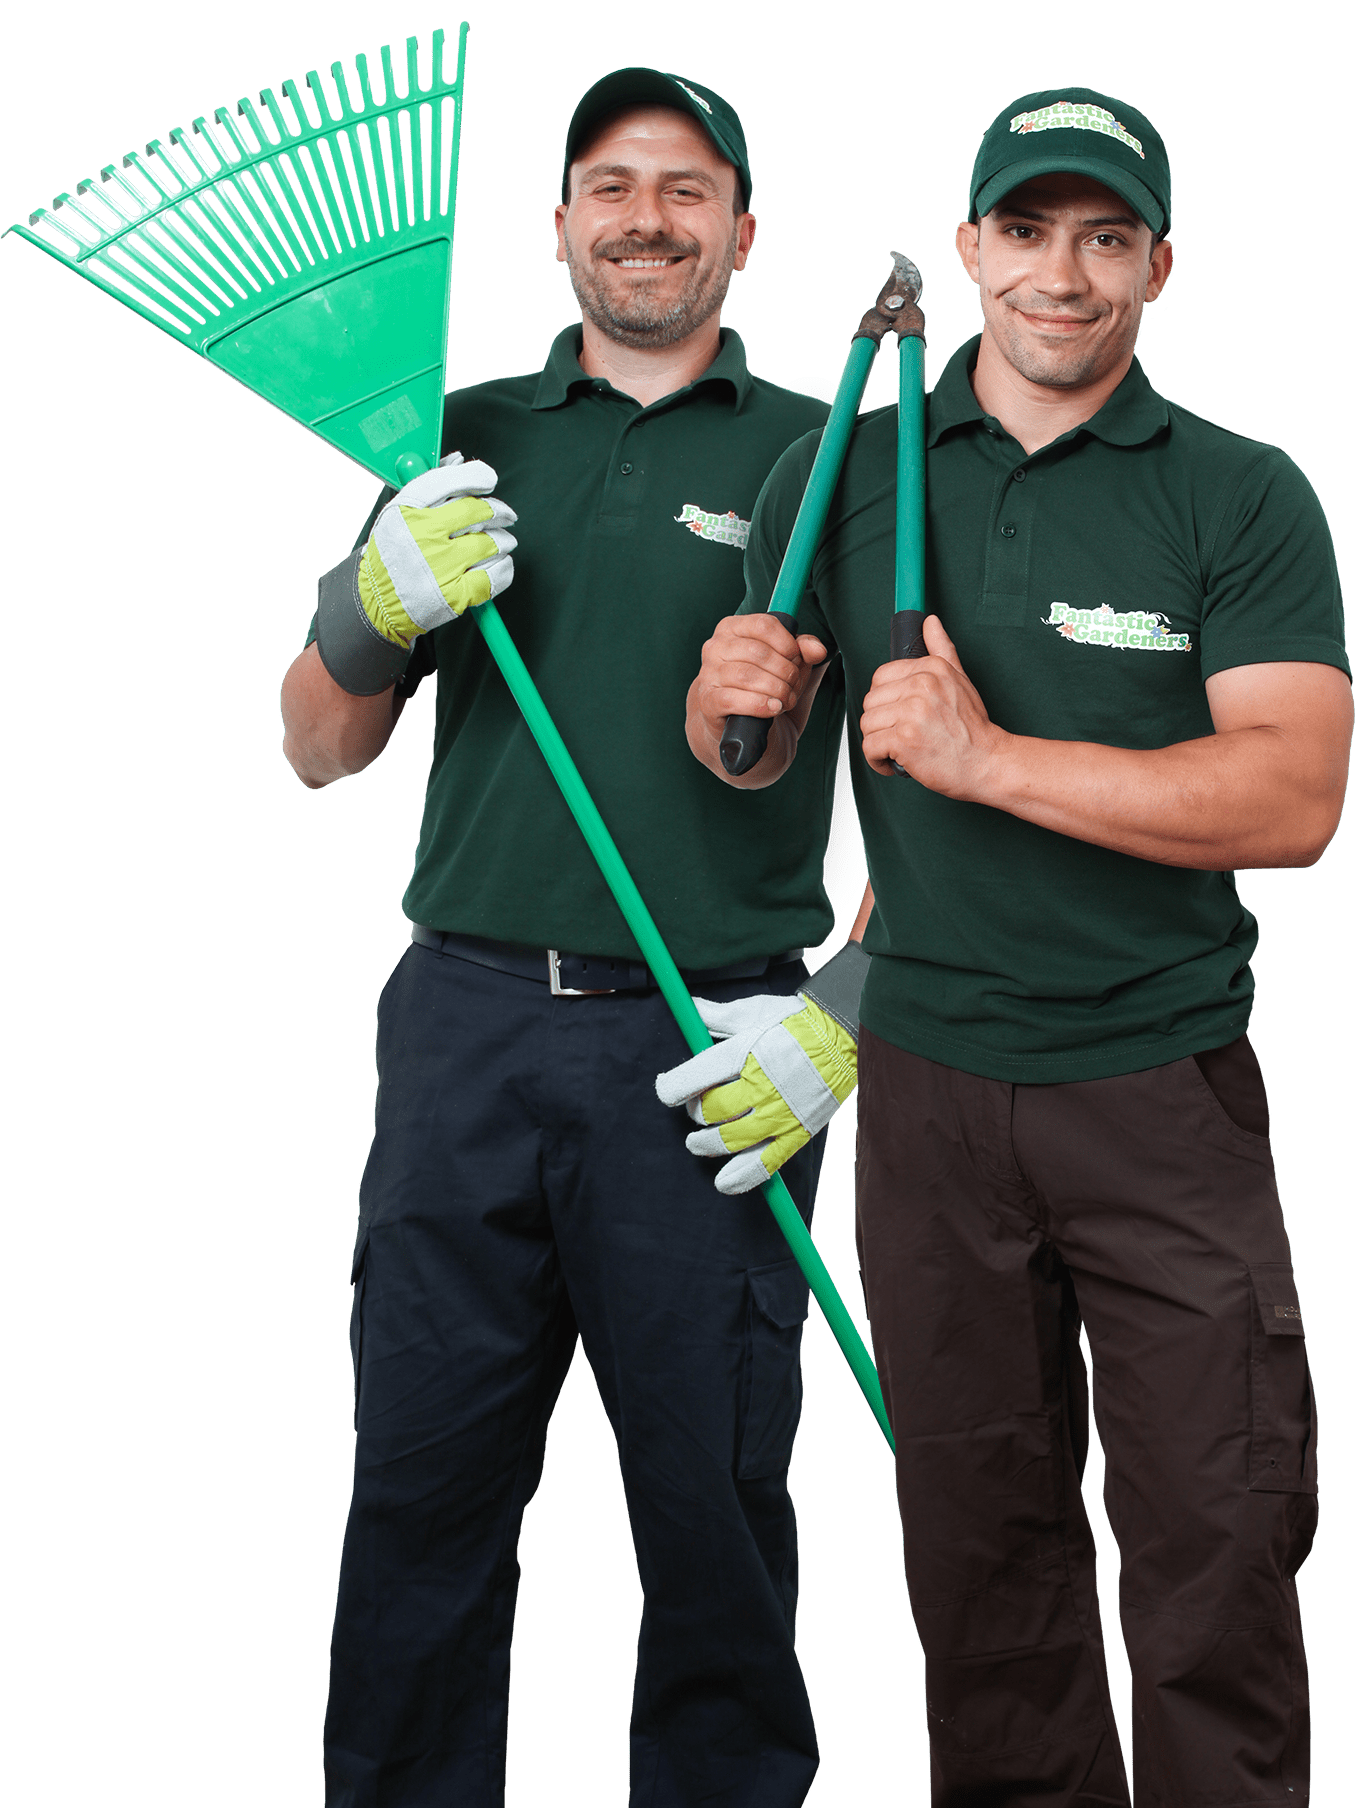 Two gardeners holding gardening equipment